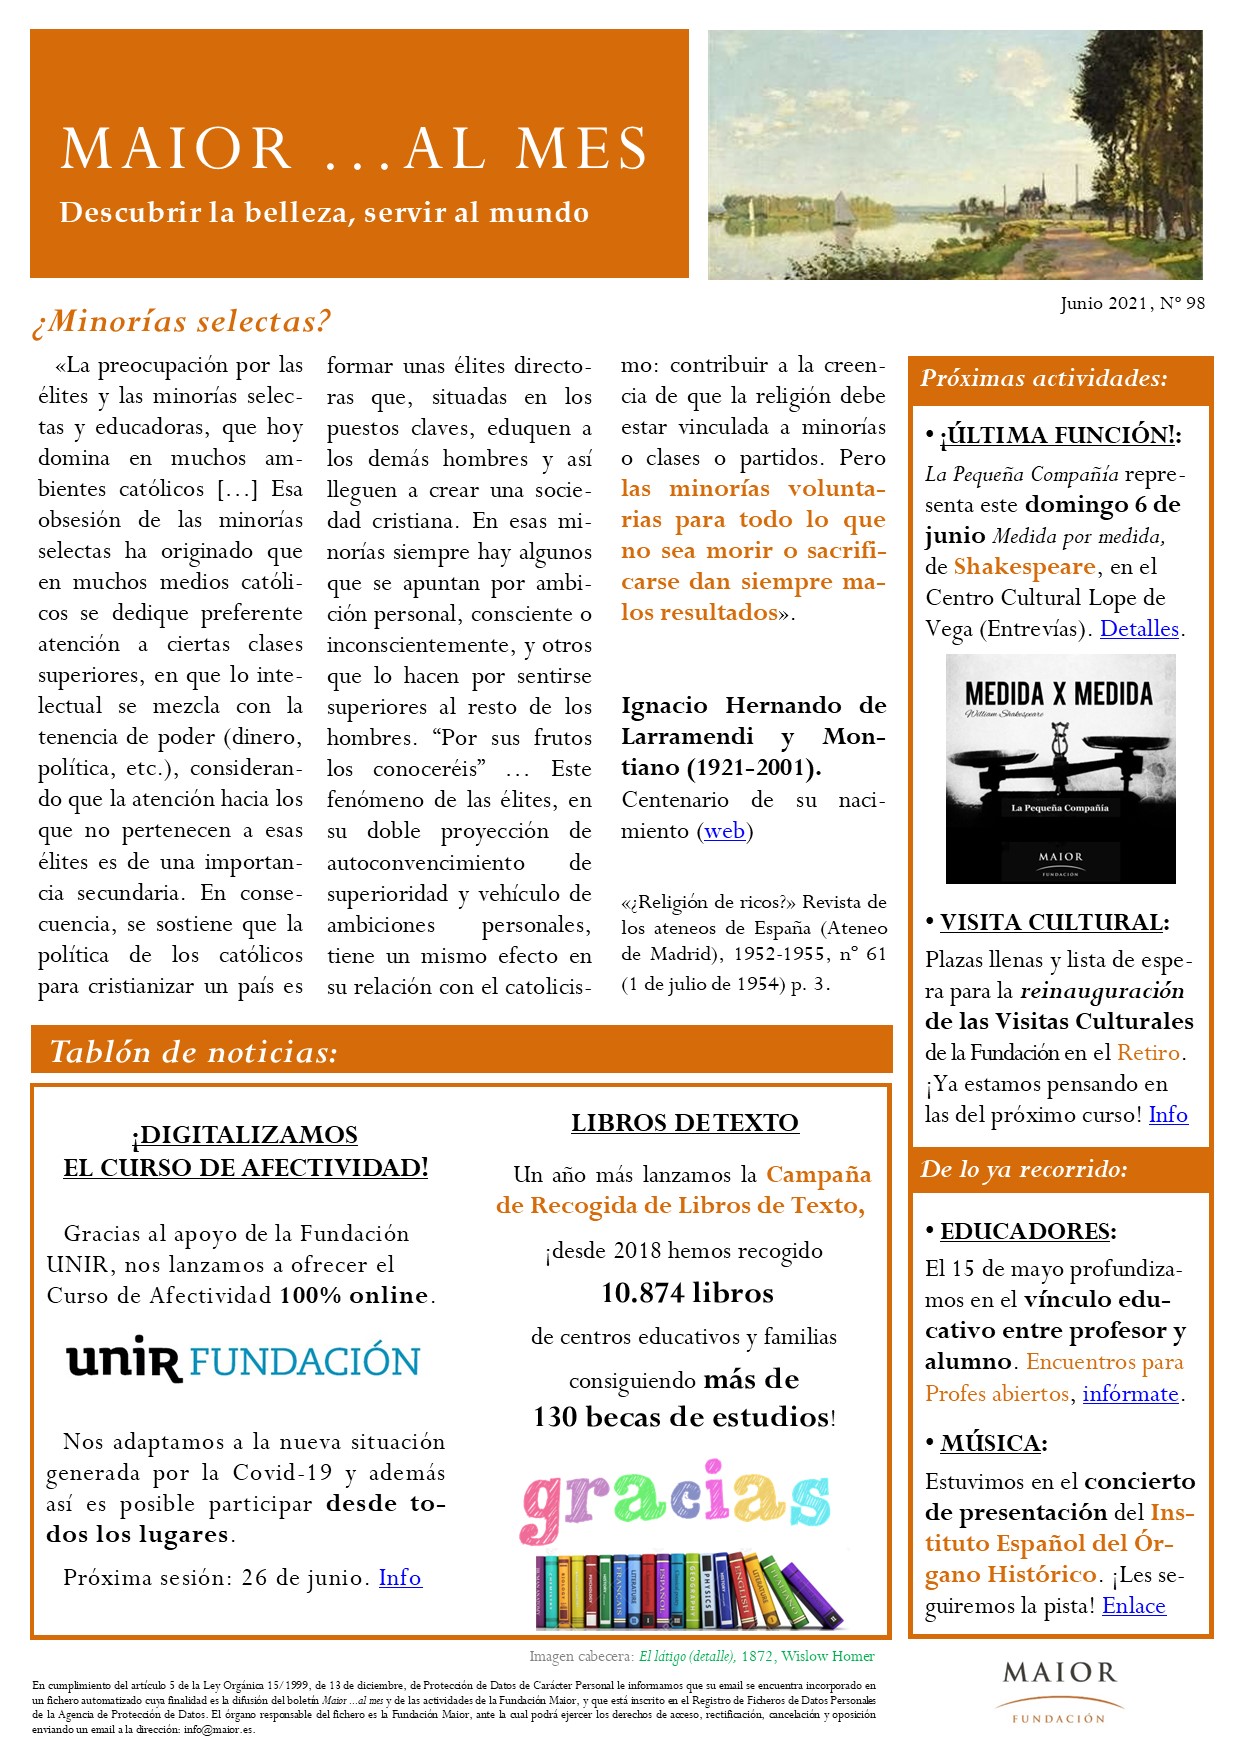 Boletín mensual de noticias y actividades de la Fundación Maior. Edición de junio 2021